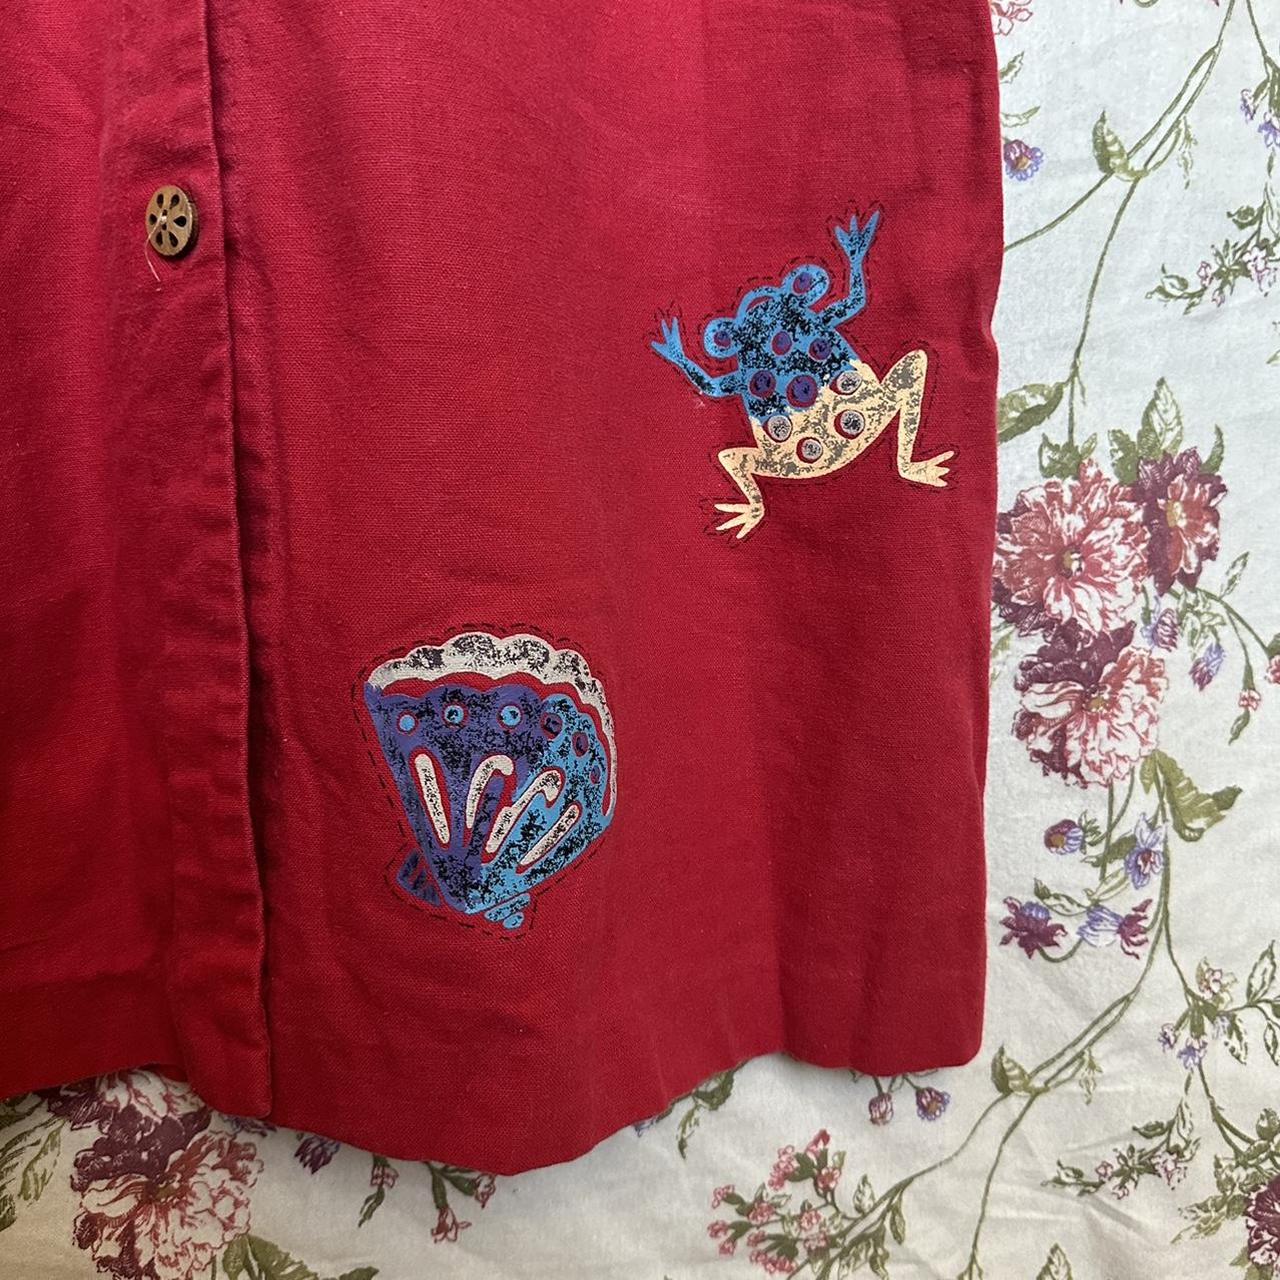 Vintage Sag Harbor Red Denim Long Maxi Dress Bug and... - Depop